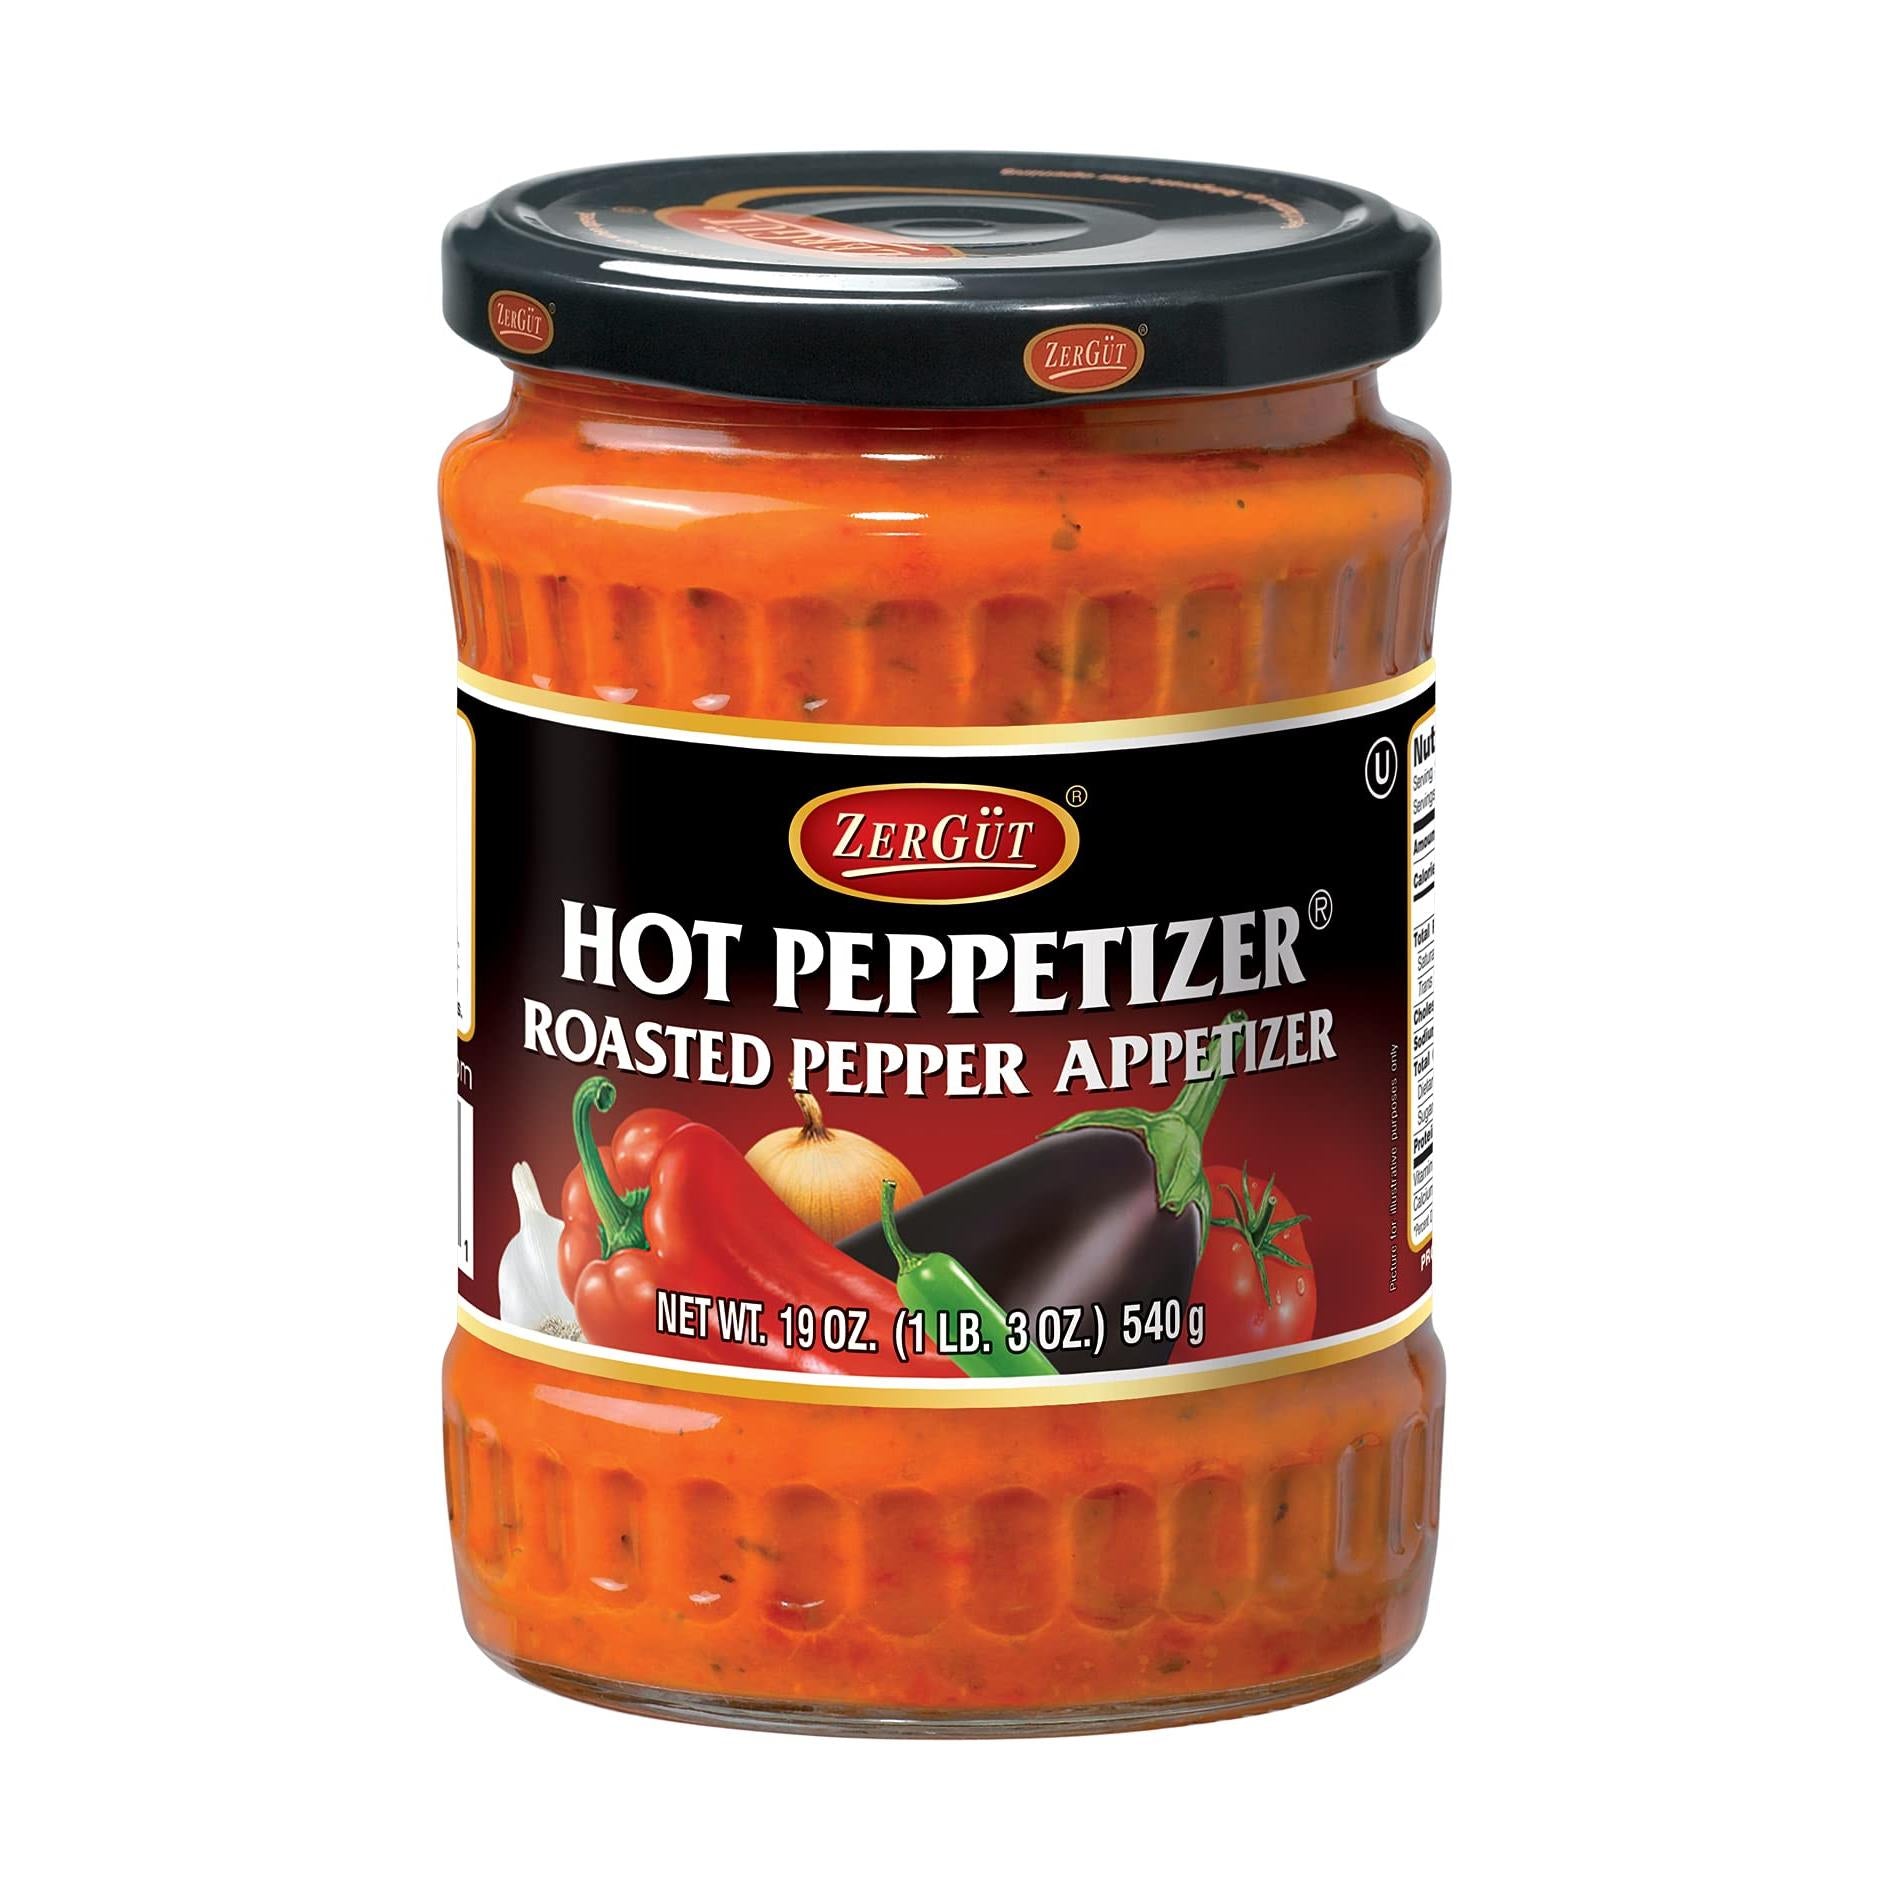 Zergut | Peppetizer Hot | Plant-Based Spread | Kosher | Vegan | No Artificial Colors, Additives, or Preservatives | 19oz / 540g Jar